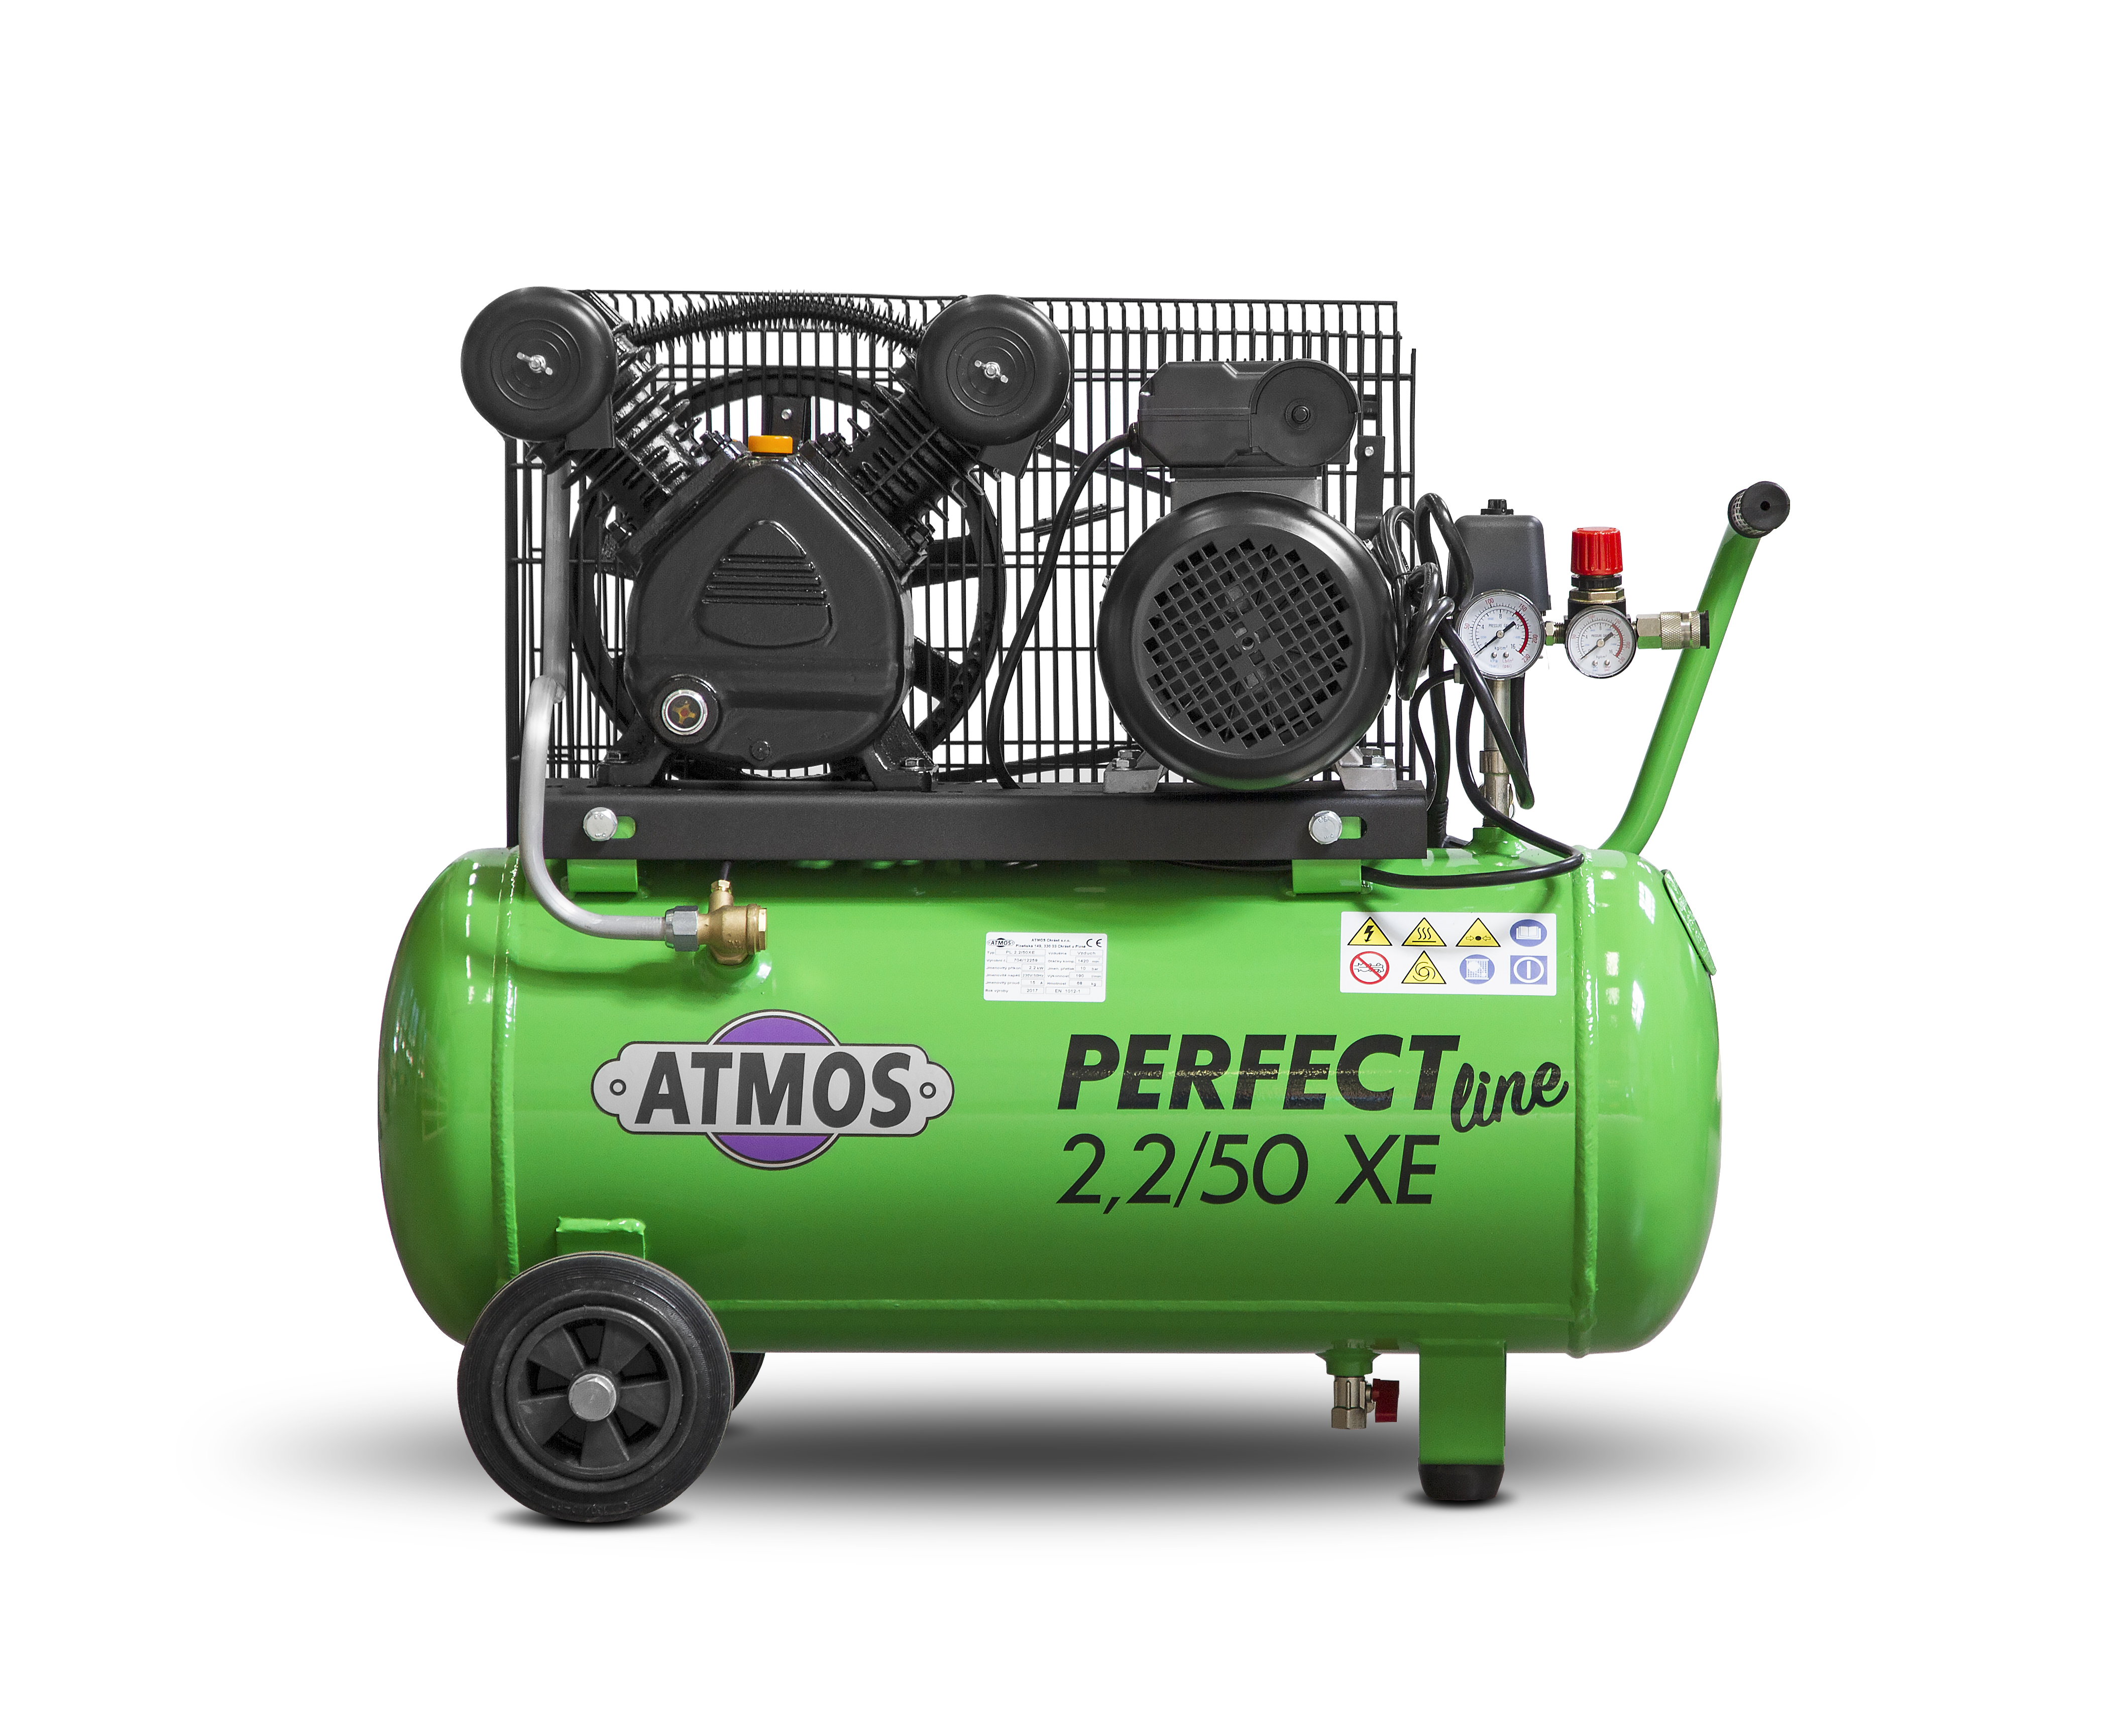 Pístový kompresor ATMOS Perfect Line PL 2,2/50 XE